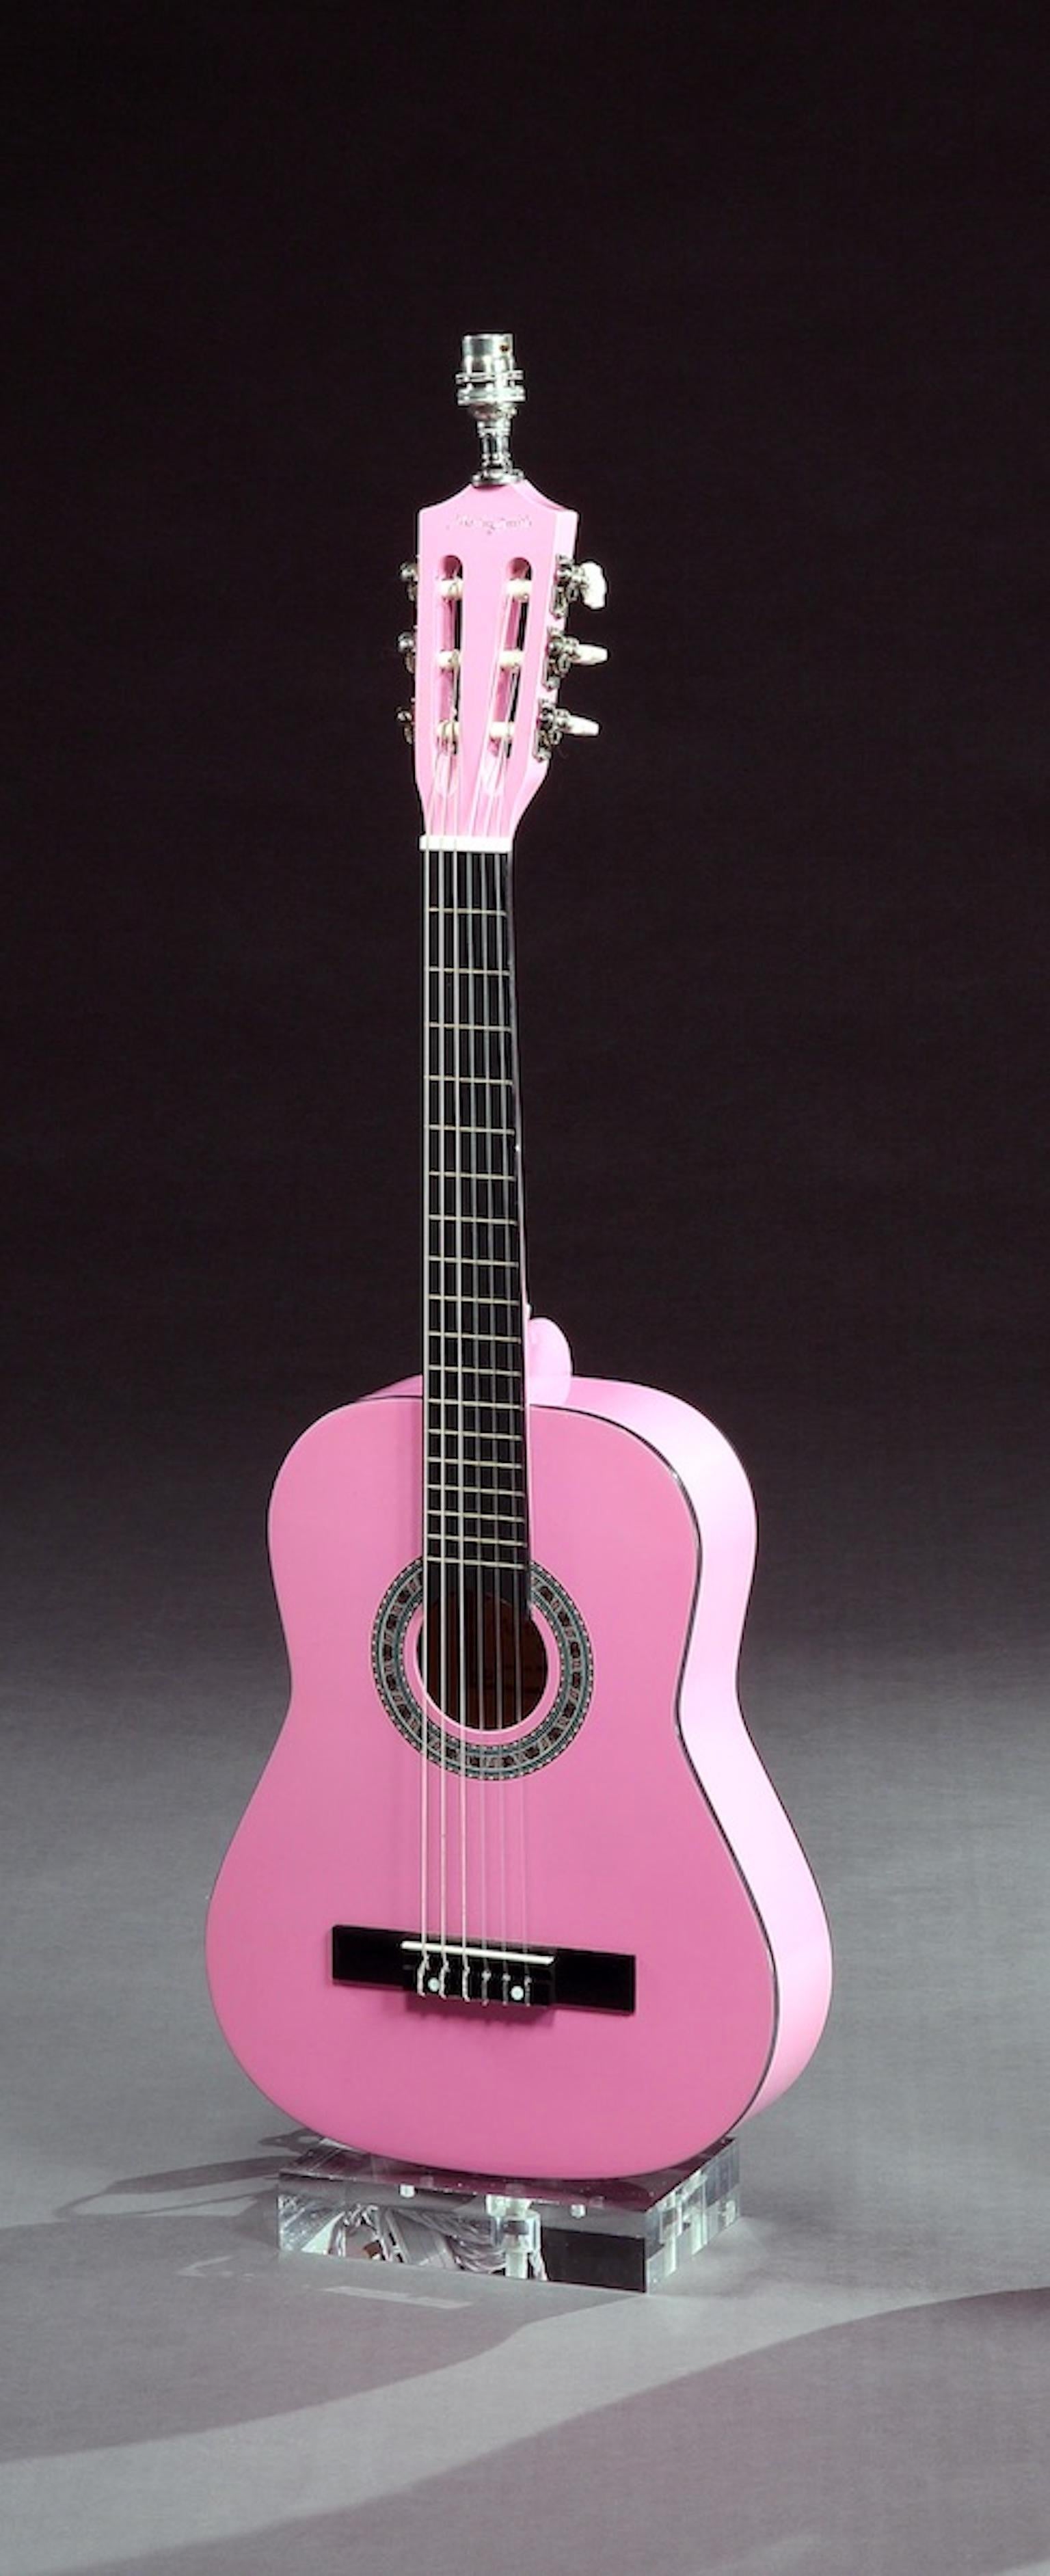 La taille trois-quarts, le corps léger et la couleur rose de cette guitare classique sont des caractéristiques qui attirent les jeunes guitaristes. Les cordes en nylon facilitent le travail des doigts tout en donnant au musicien un son classique